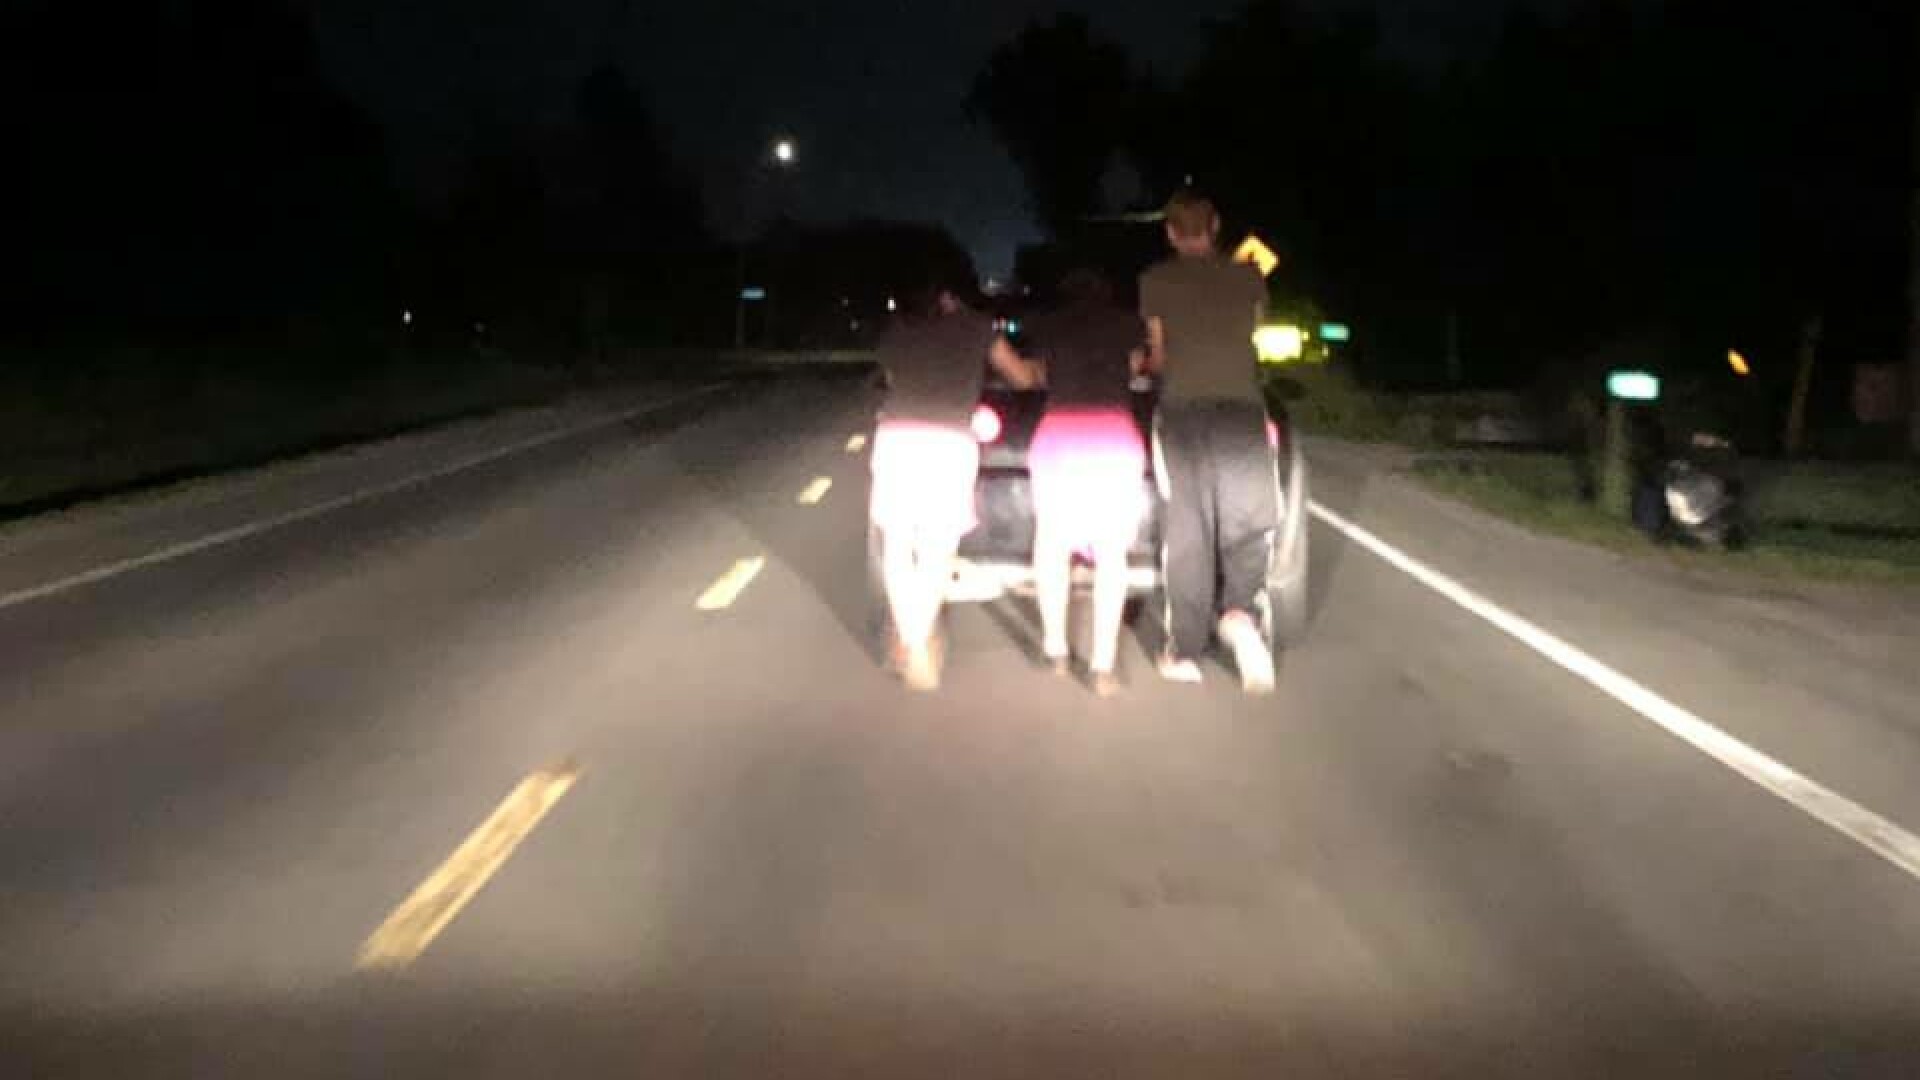 Au împins mașina stricată a unei femei, 8 kilometri